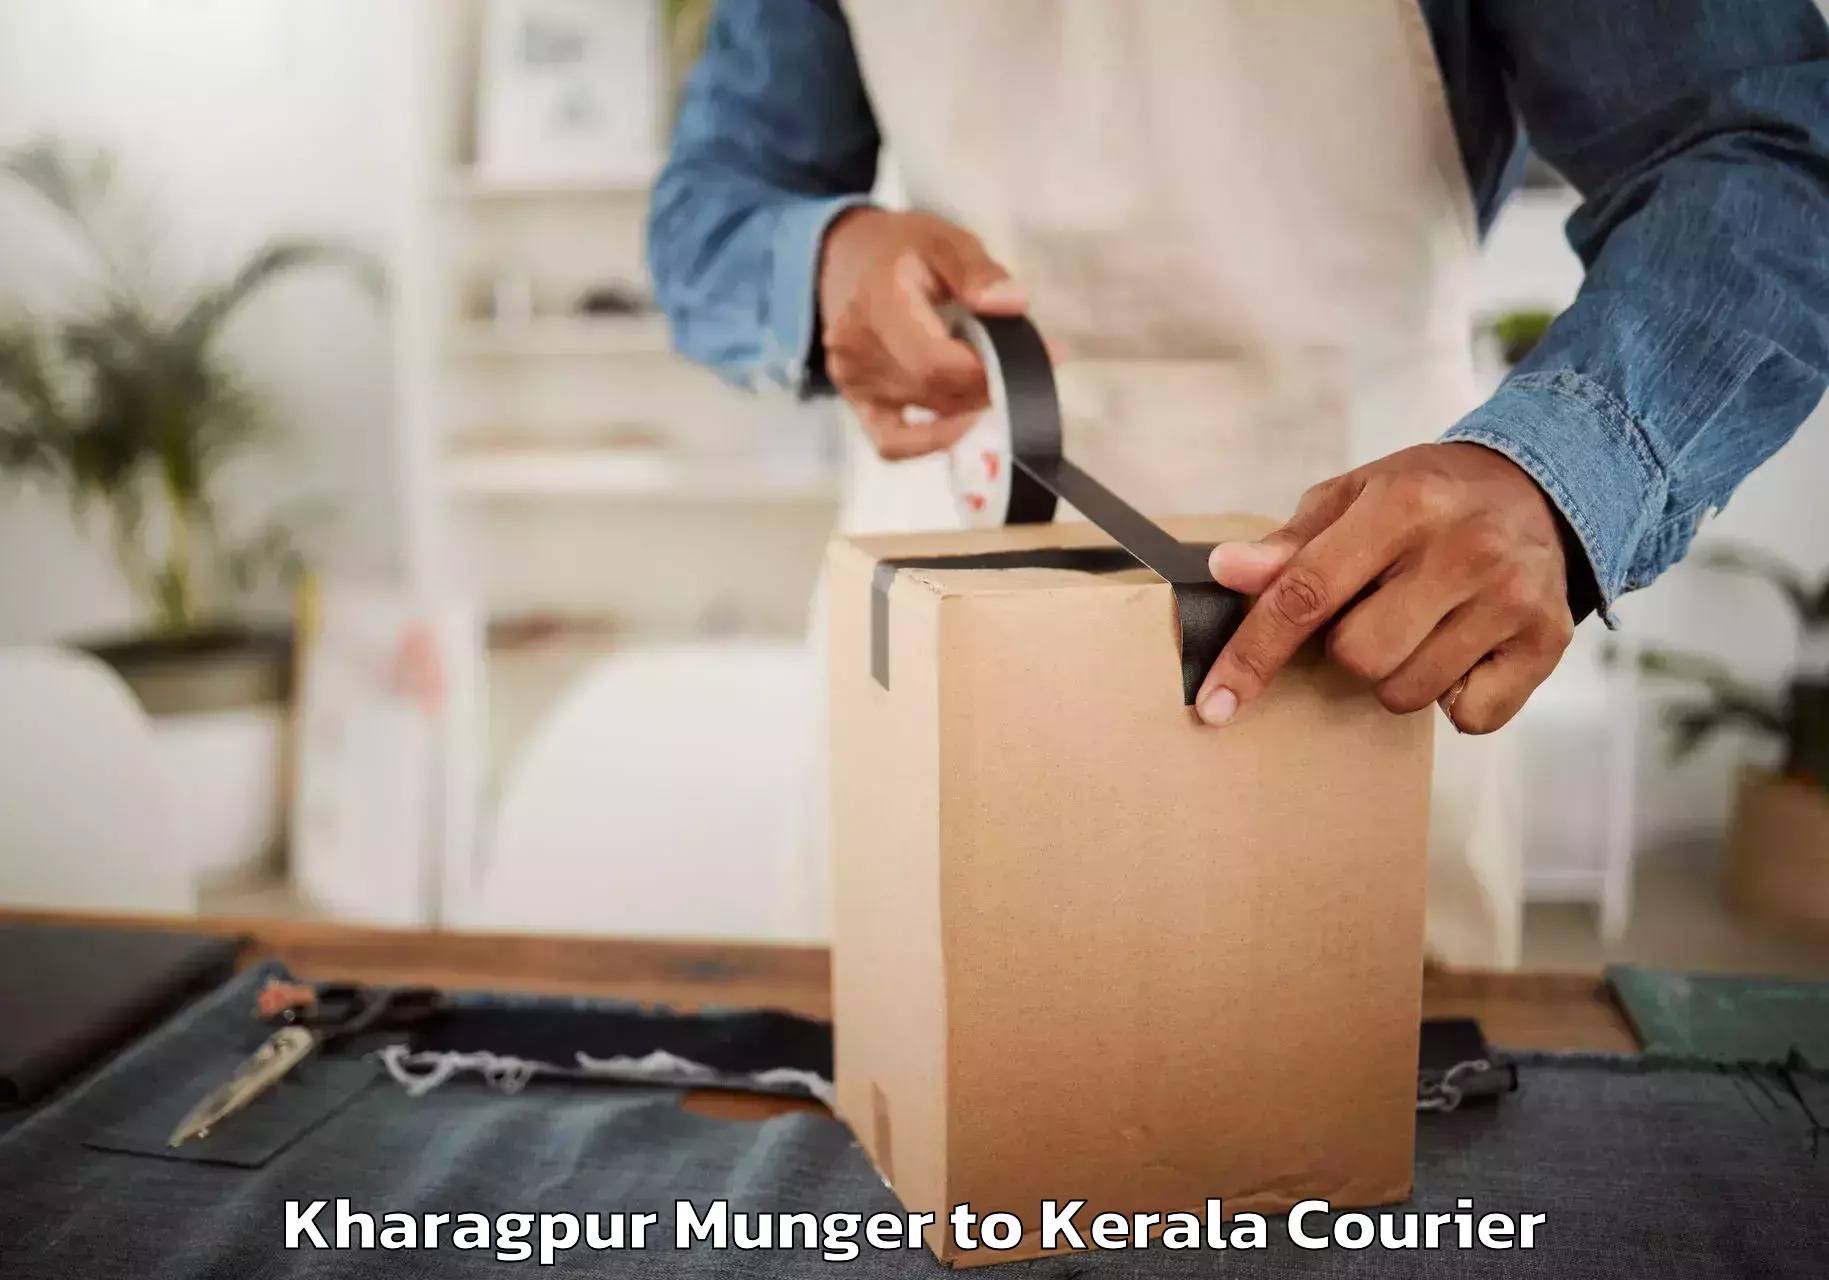 Furniture transport service Kharagpur Munger to Kerala University Thiruvananthapuram